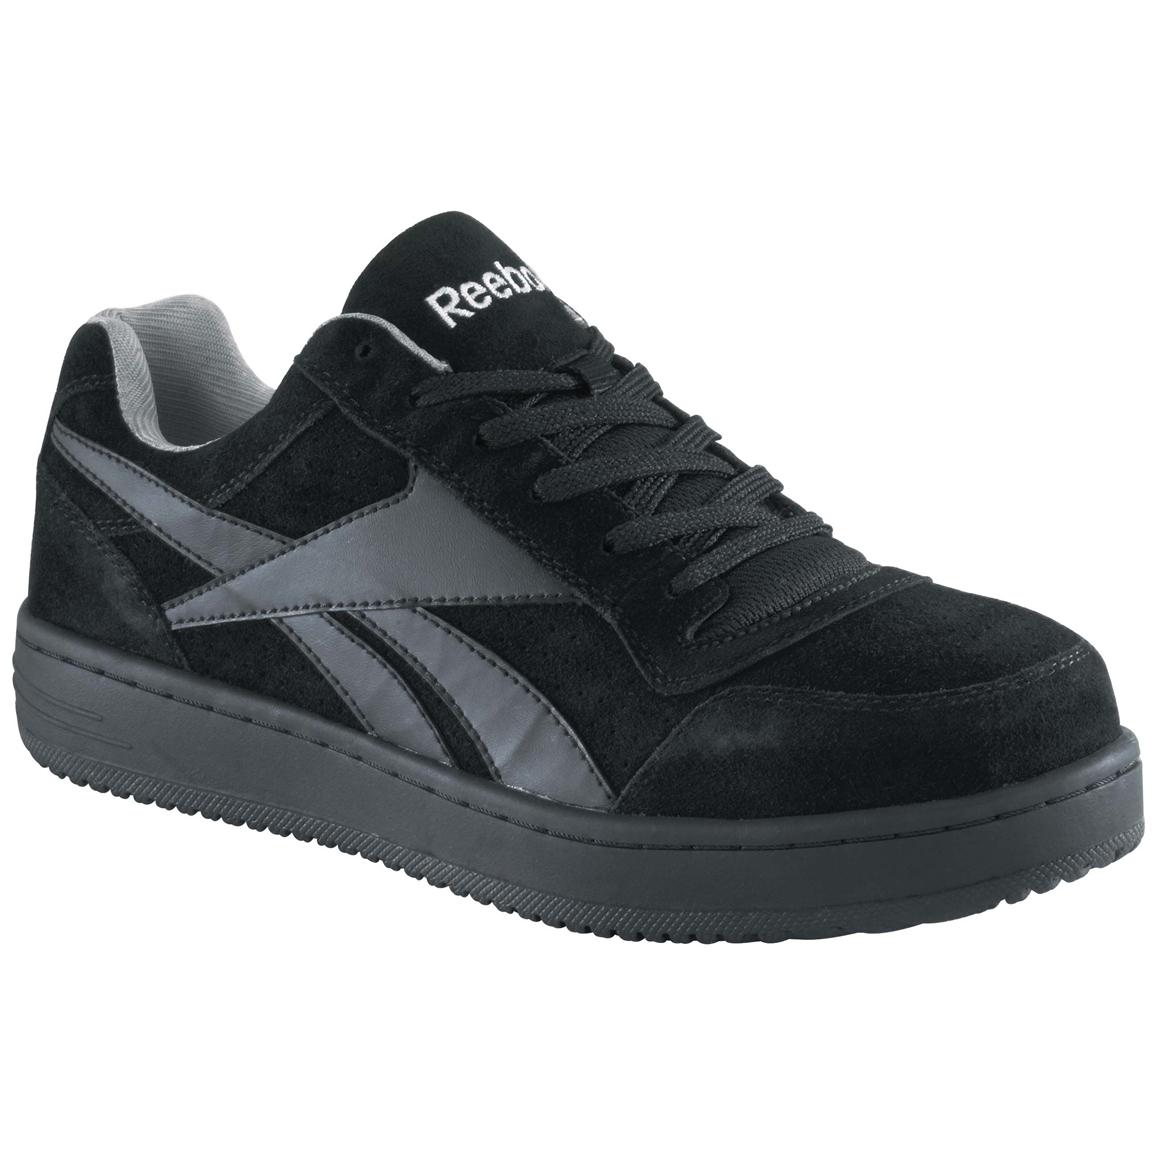 Men's Reebok® Steel Toe Skateboard Shoes, Black